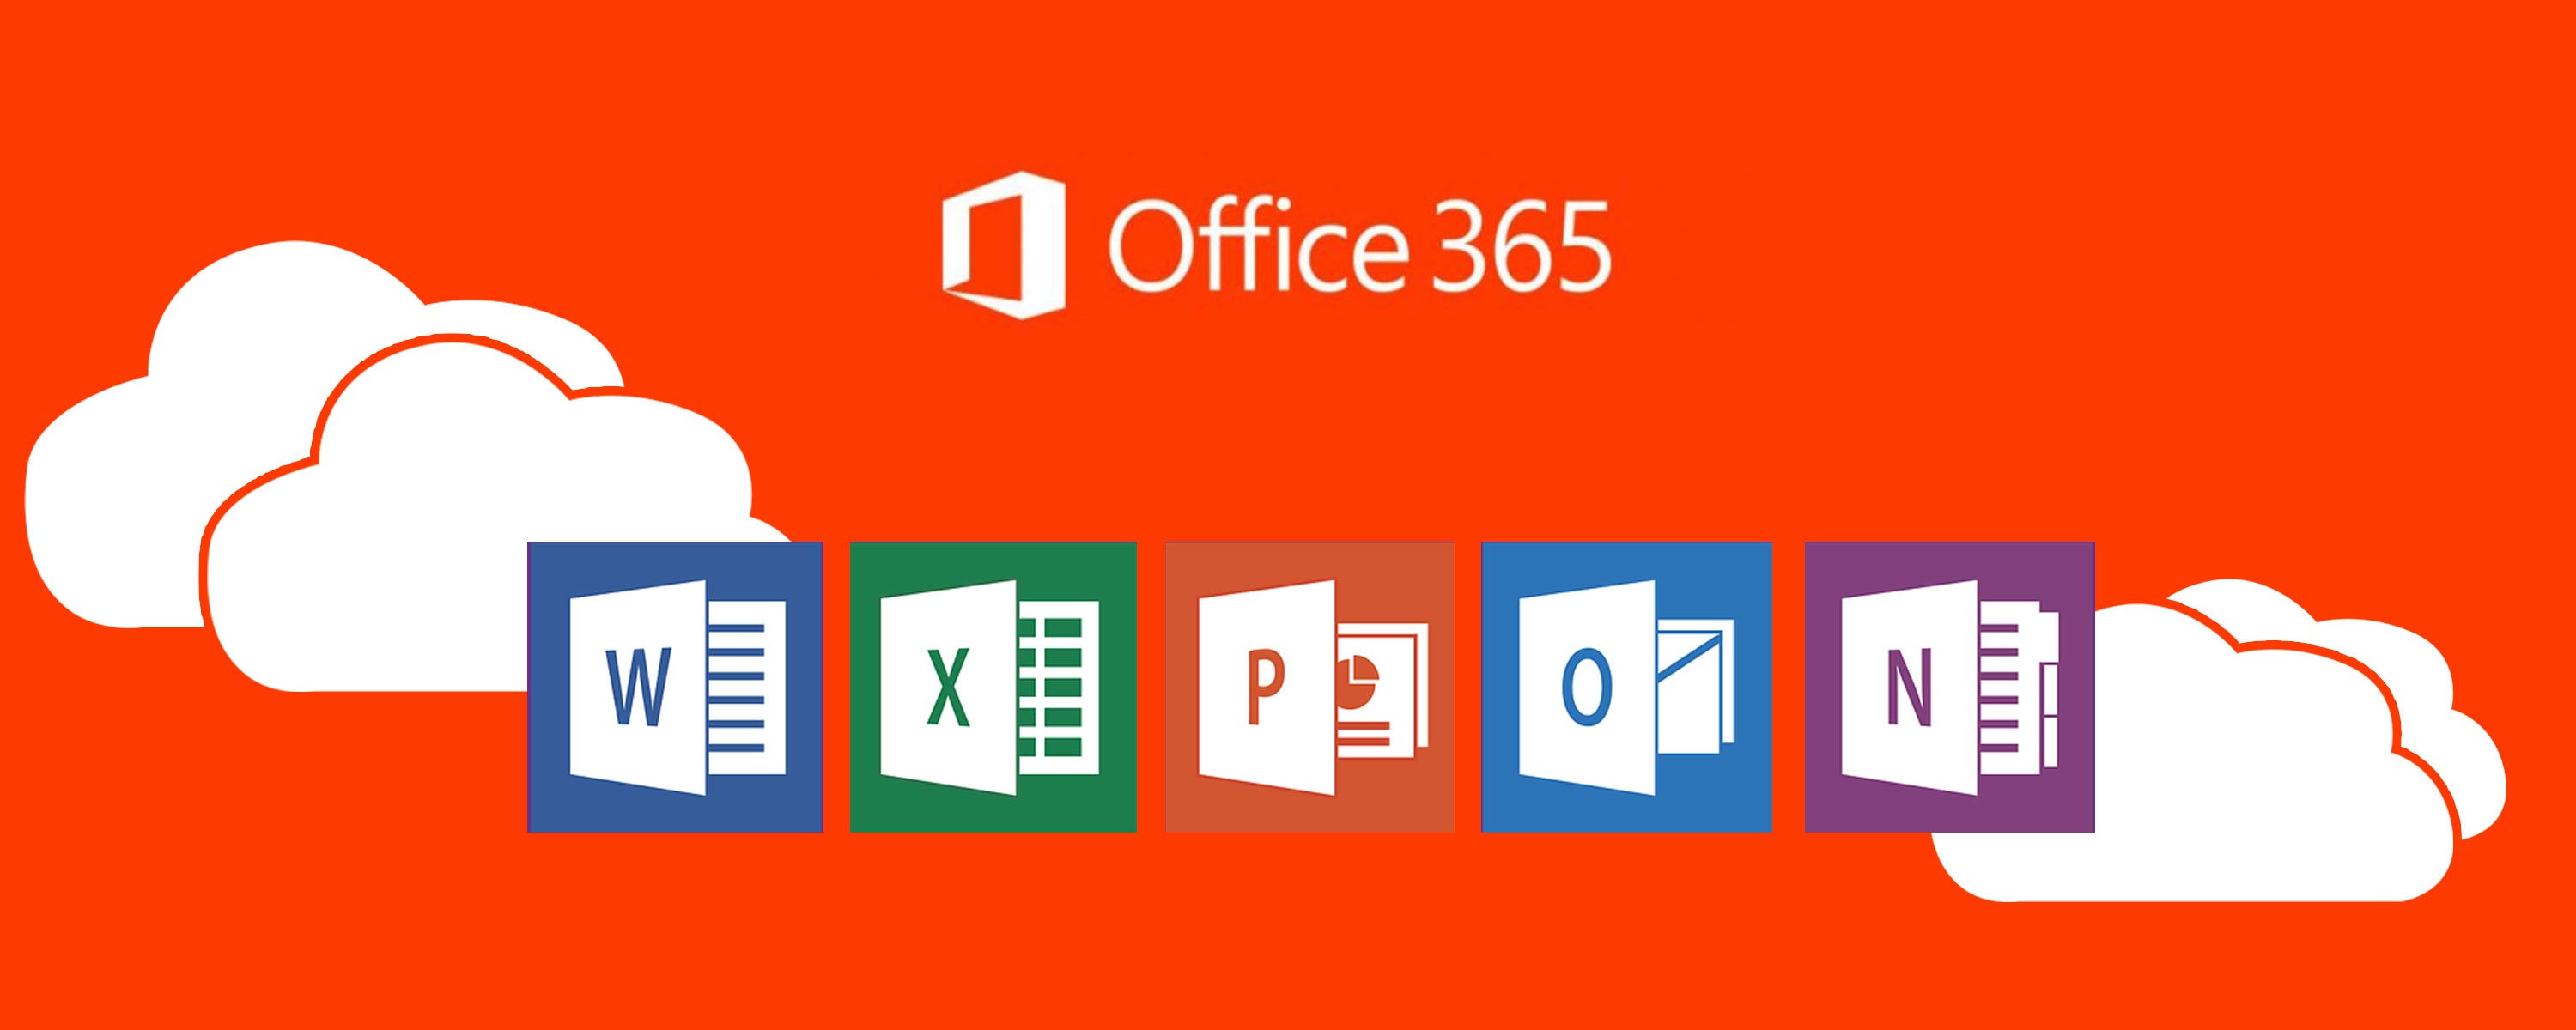 Office 365. Платформа офис 365. Значок офис 365. Офис 365 про плюс.